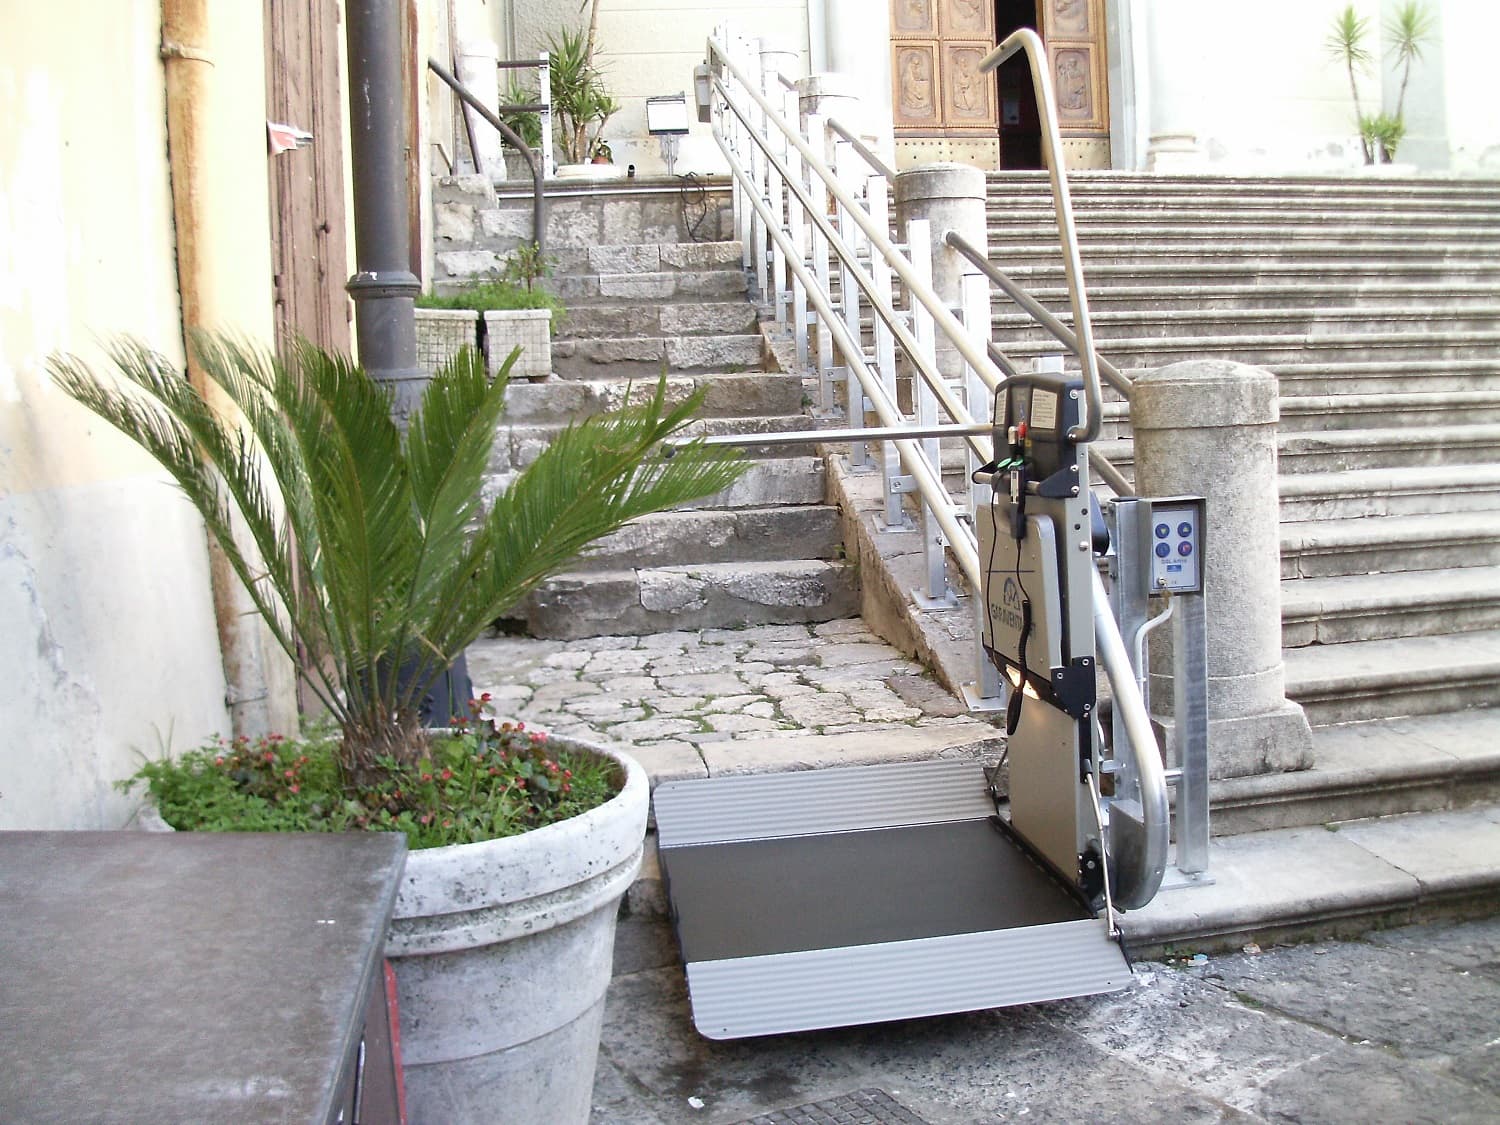 external-incline-wheelchair-access-stair-lift.JPG